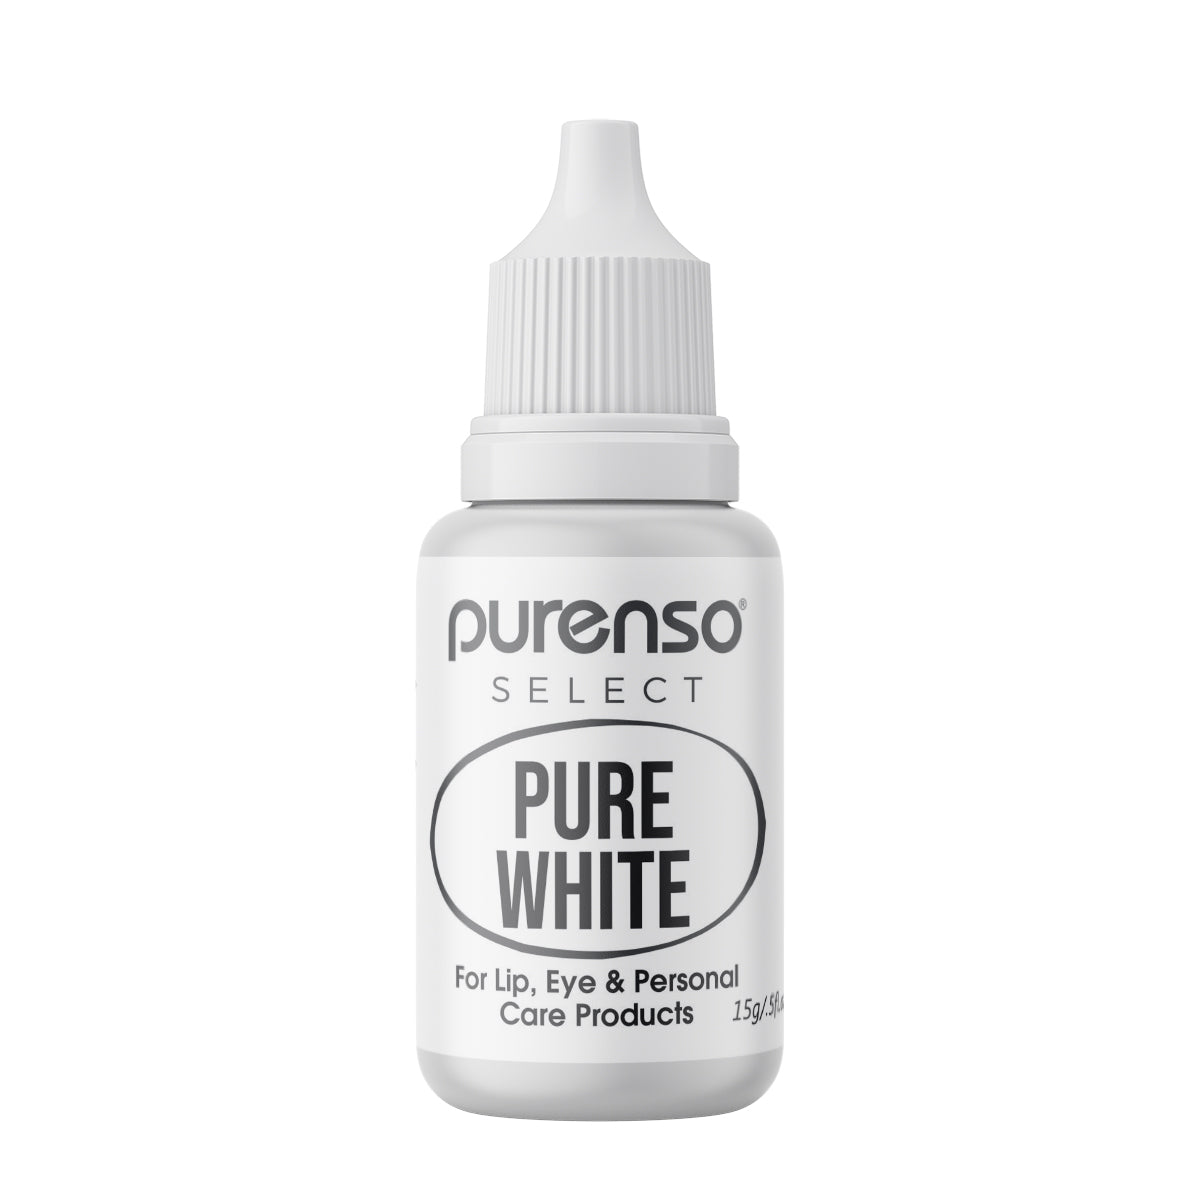 ipuro pure white – Online Shop Wörz